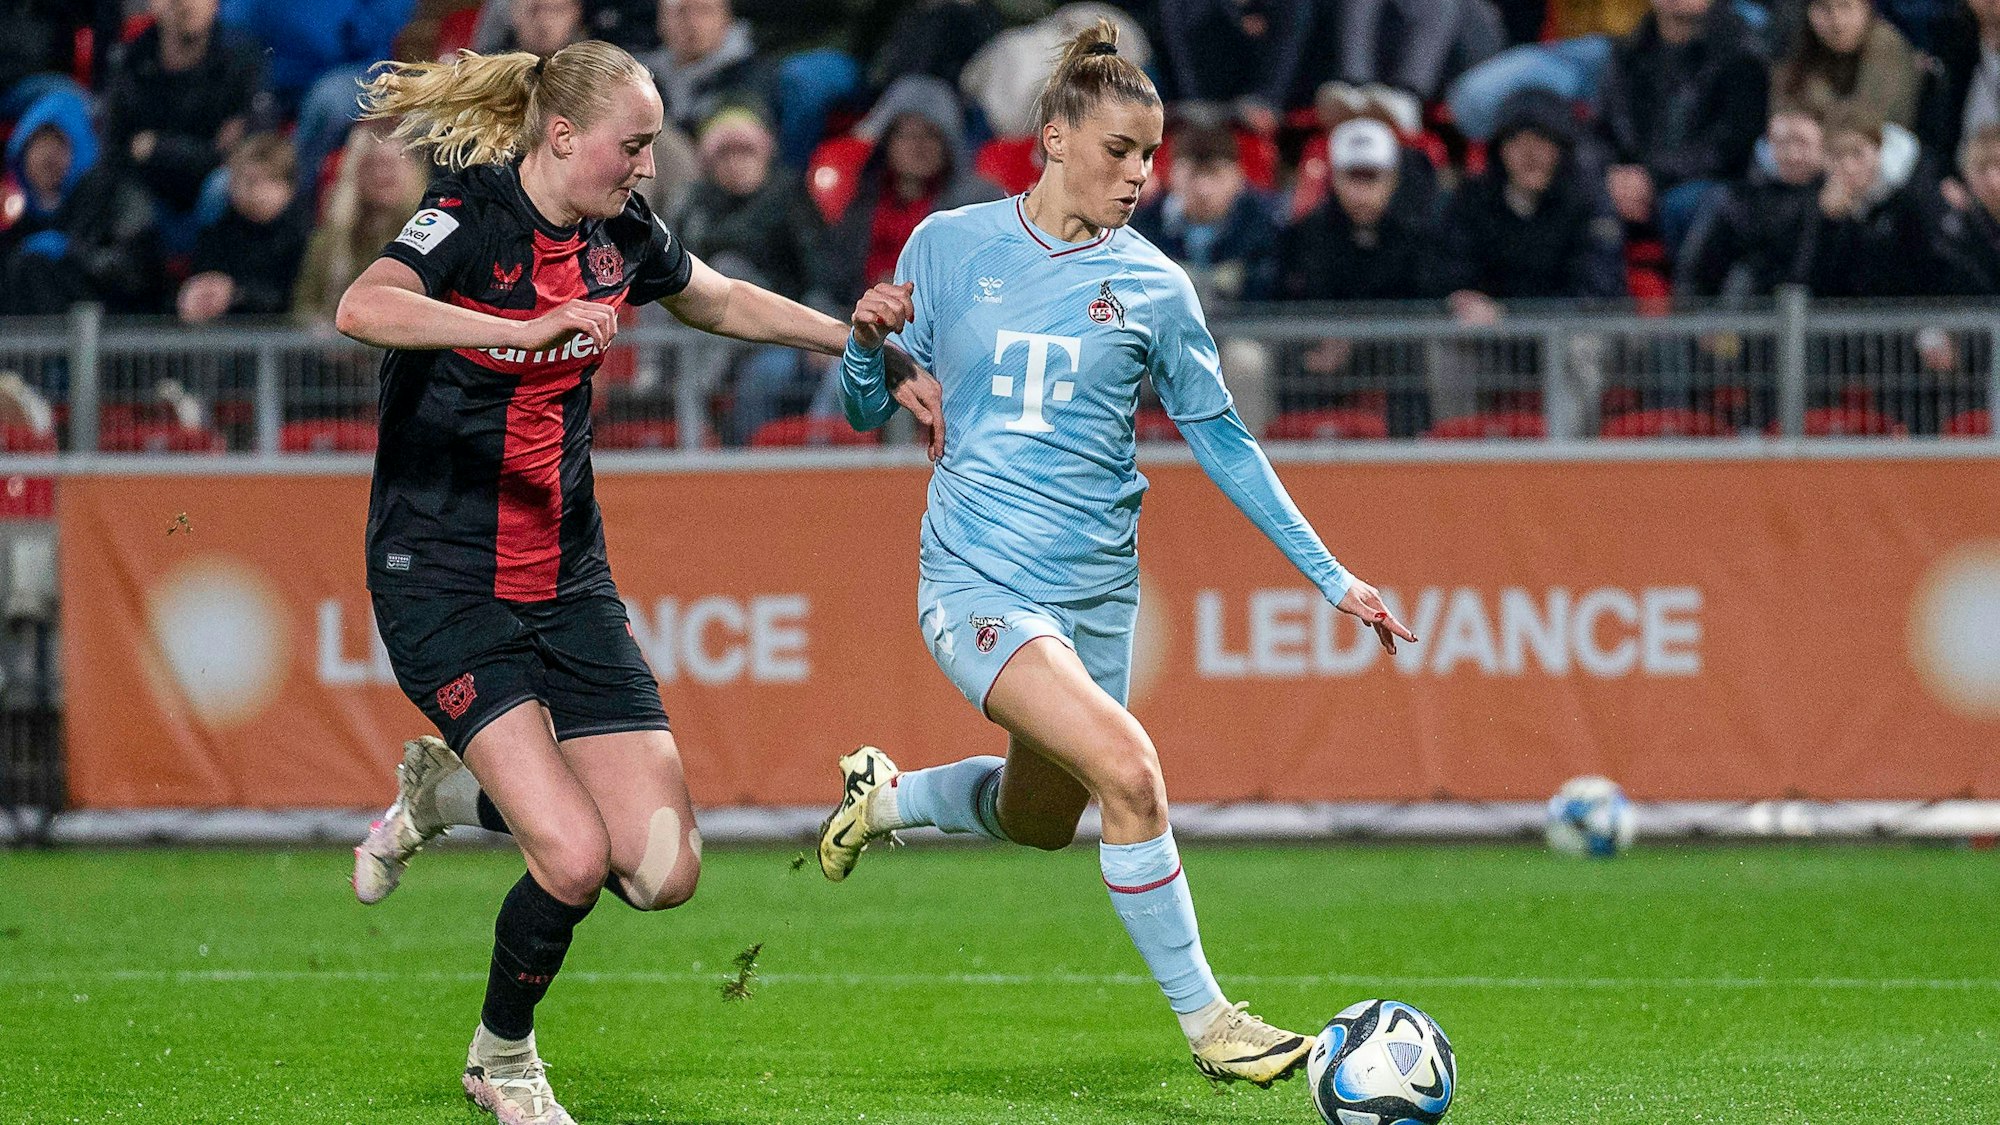 Zweikampf zwischen Emilie Bragstad Bayer 04 Leverkusen, 14 und Selina Cerci 1. FC Koeln, 29, rechts.